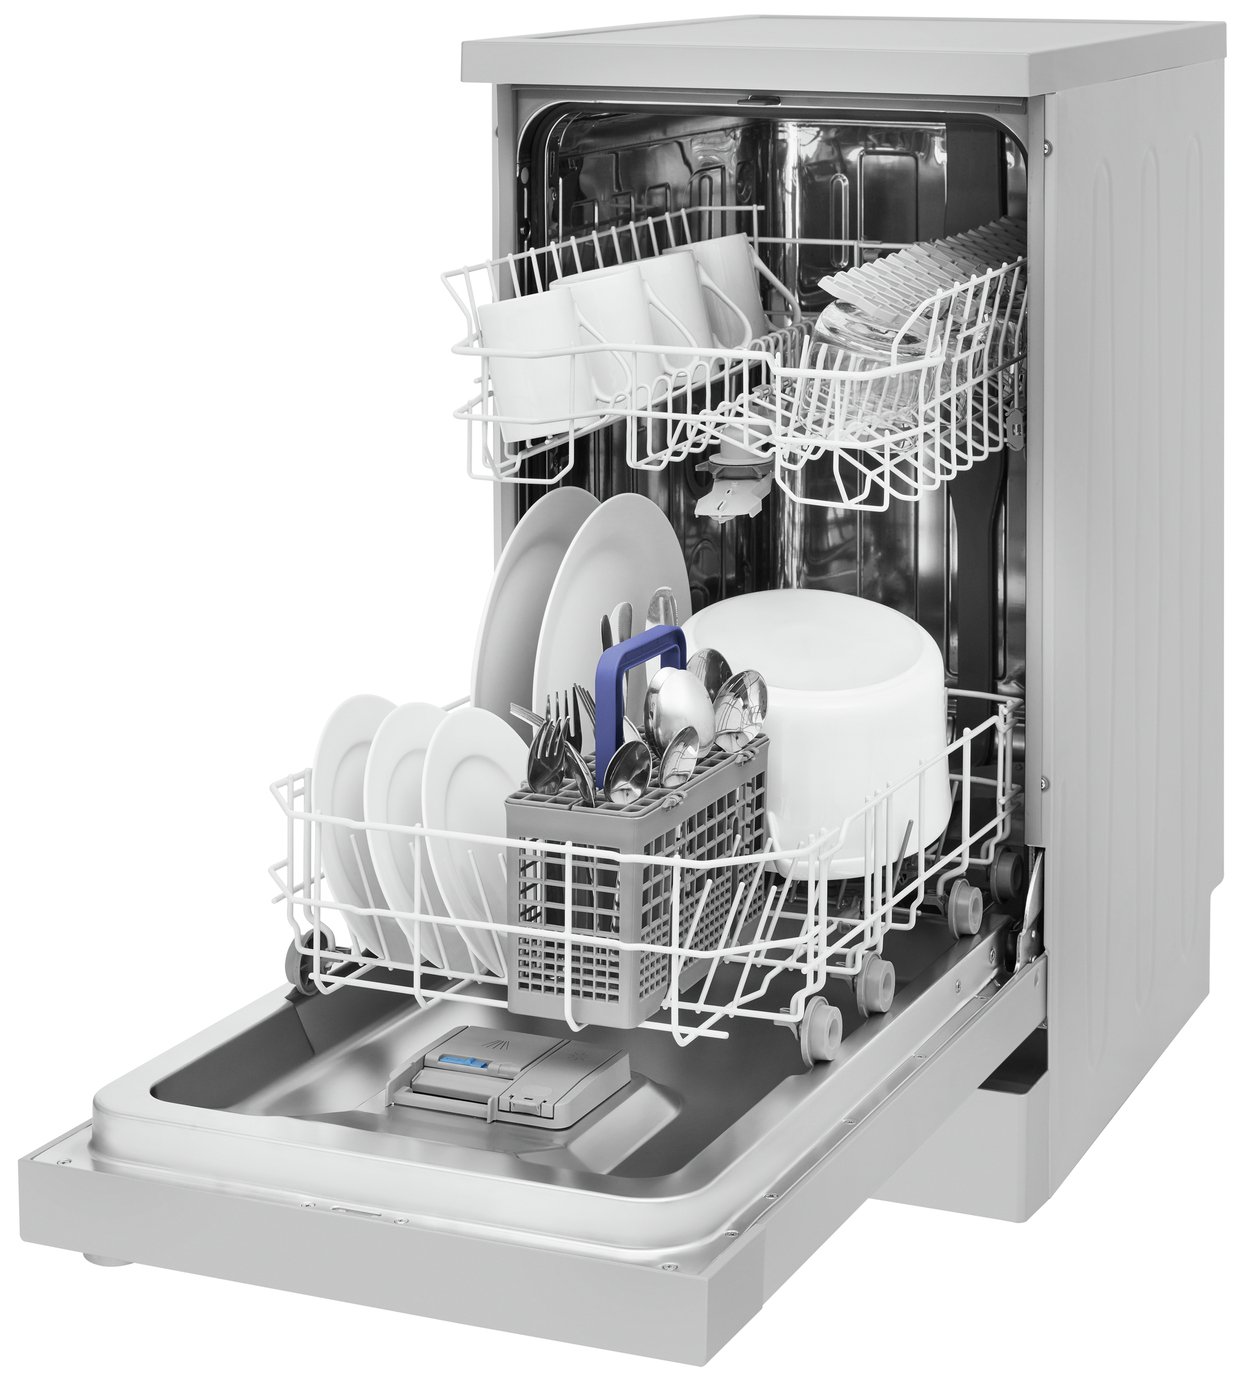 argos beko slimline dishwasher